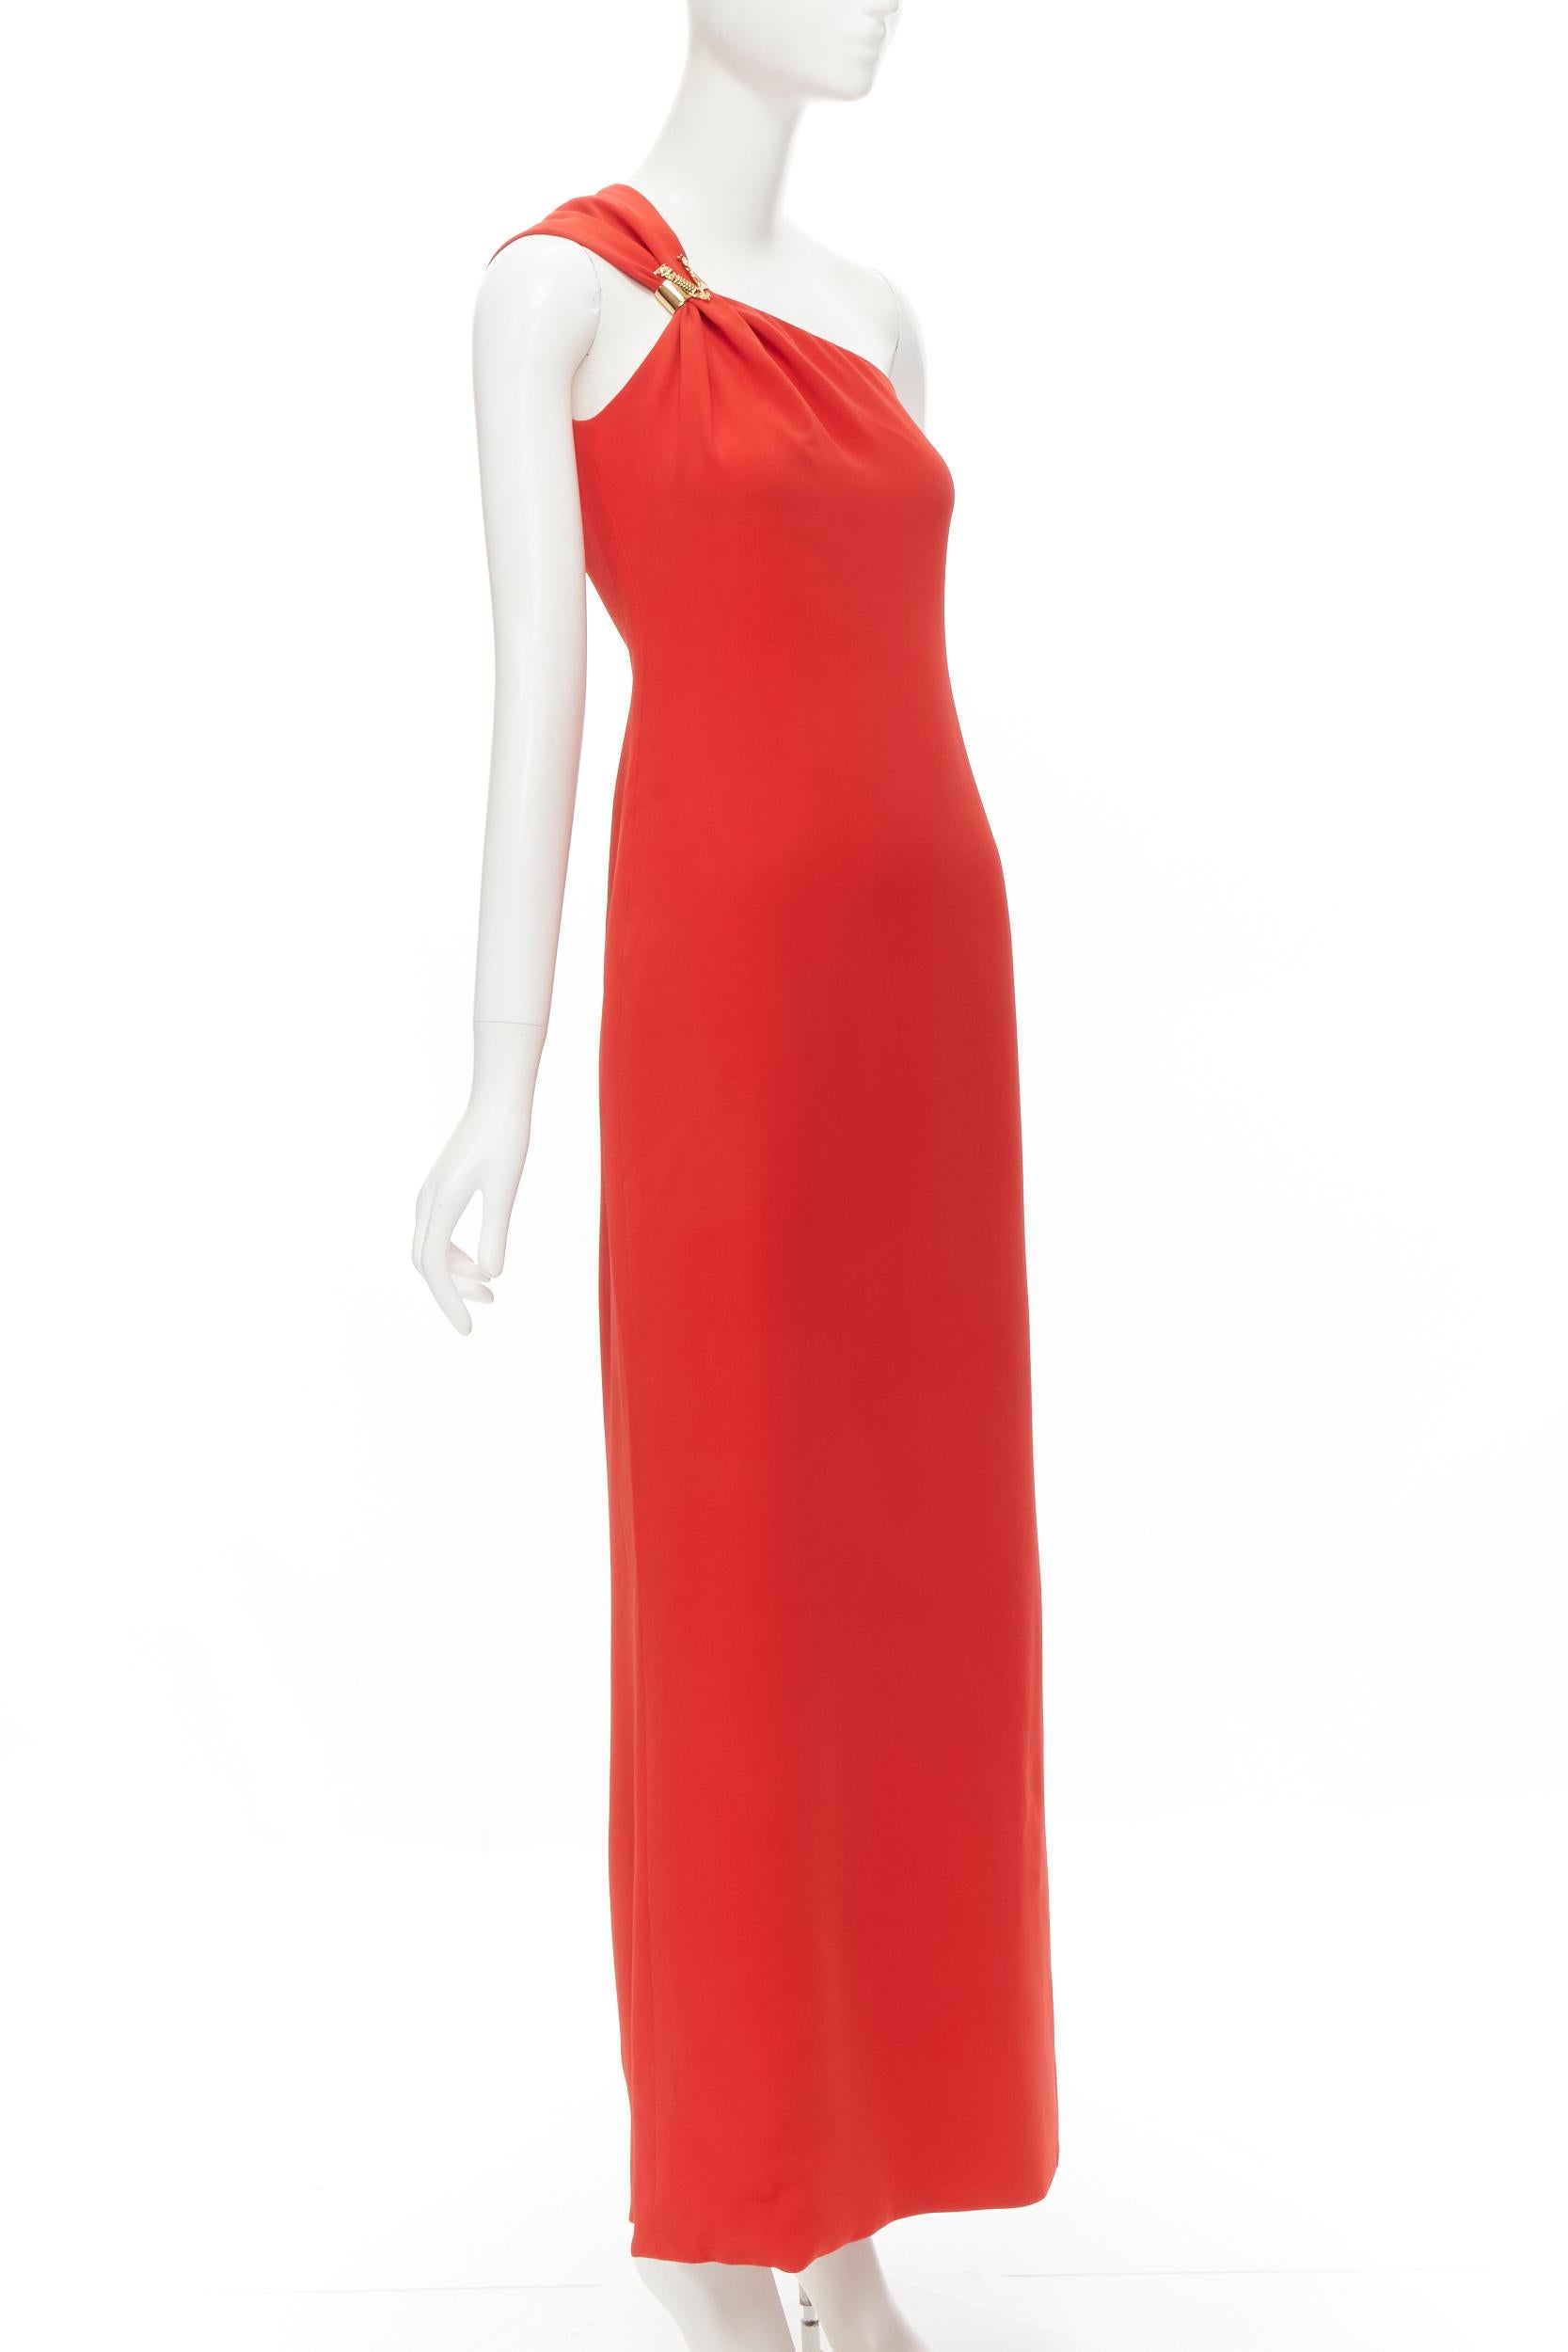 Rouge Versace - Robe asymétrique rouge 100 % soie avec fermoir en V vertueux, taille IT 42 M, état neuf en vente